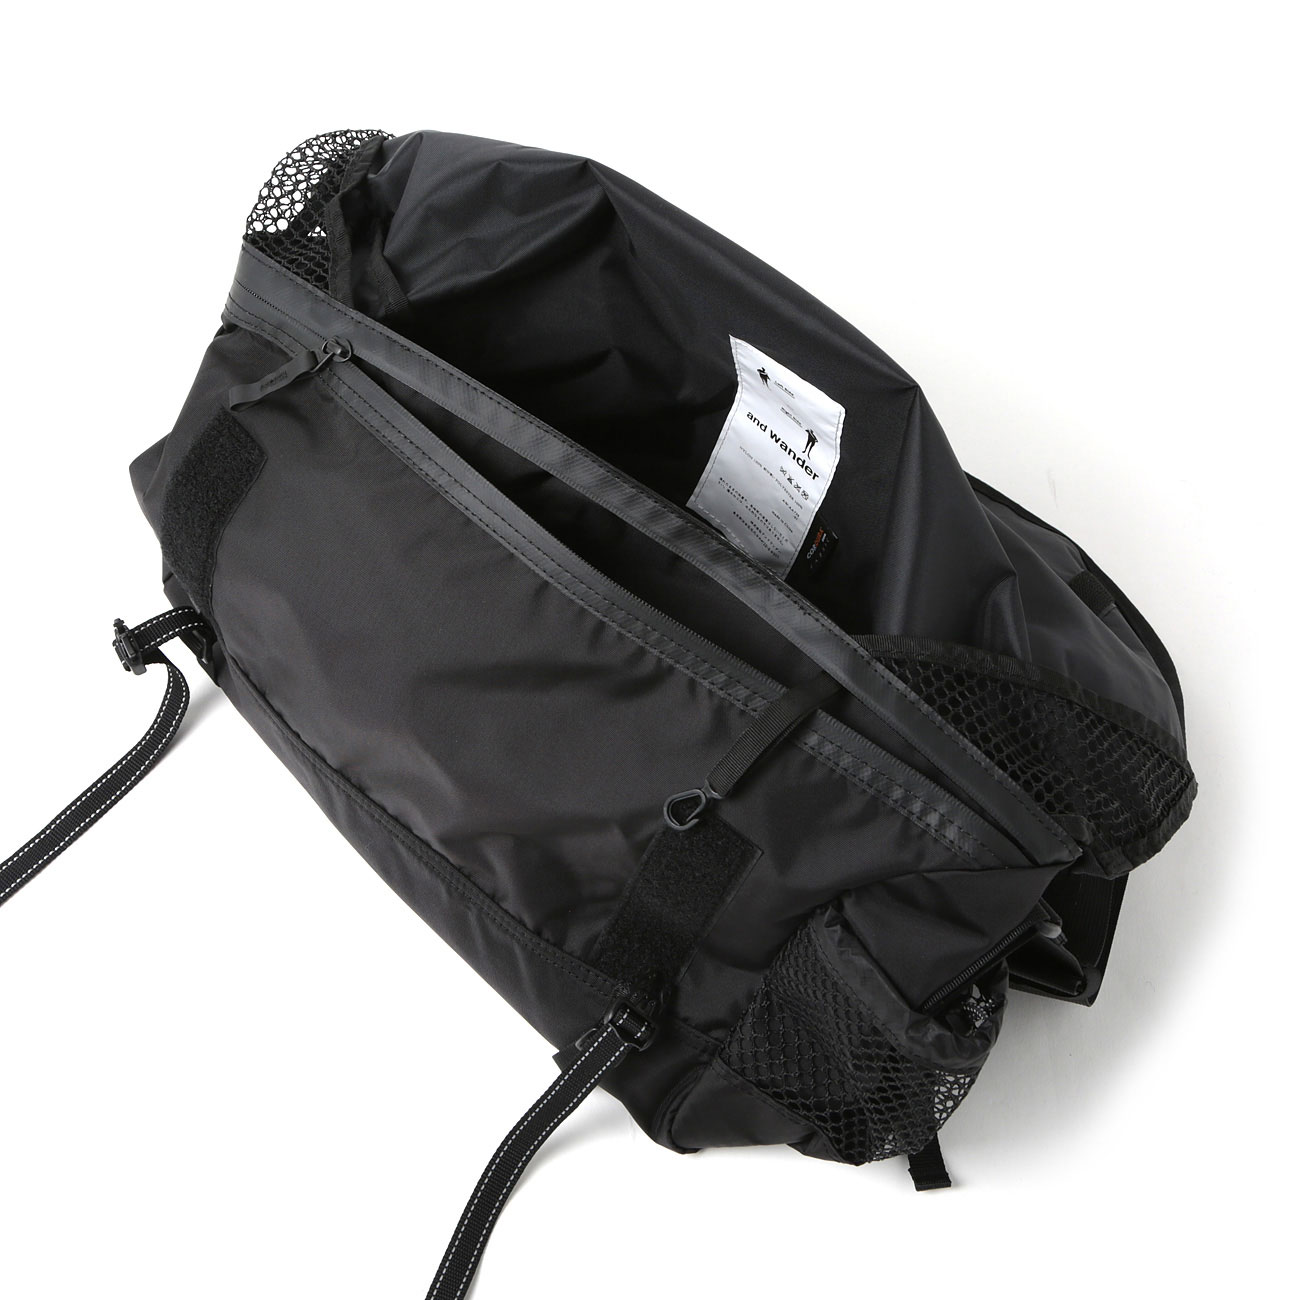 20L messenger bag - Black